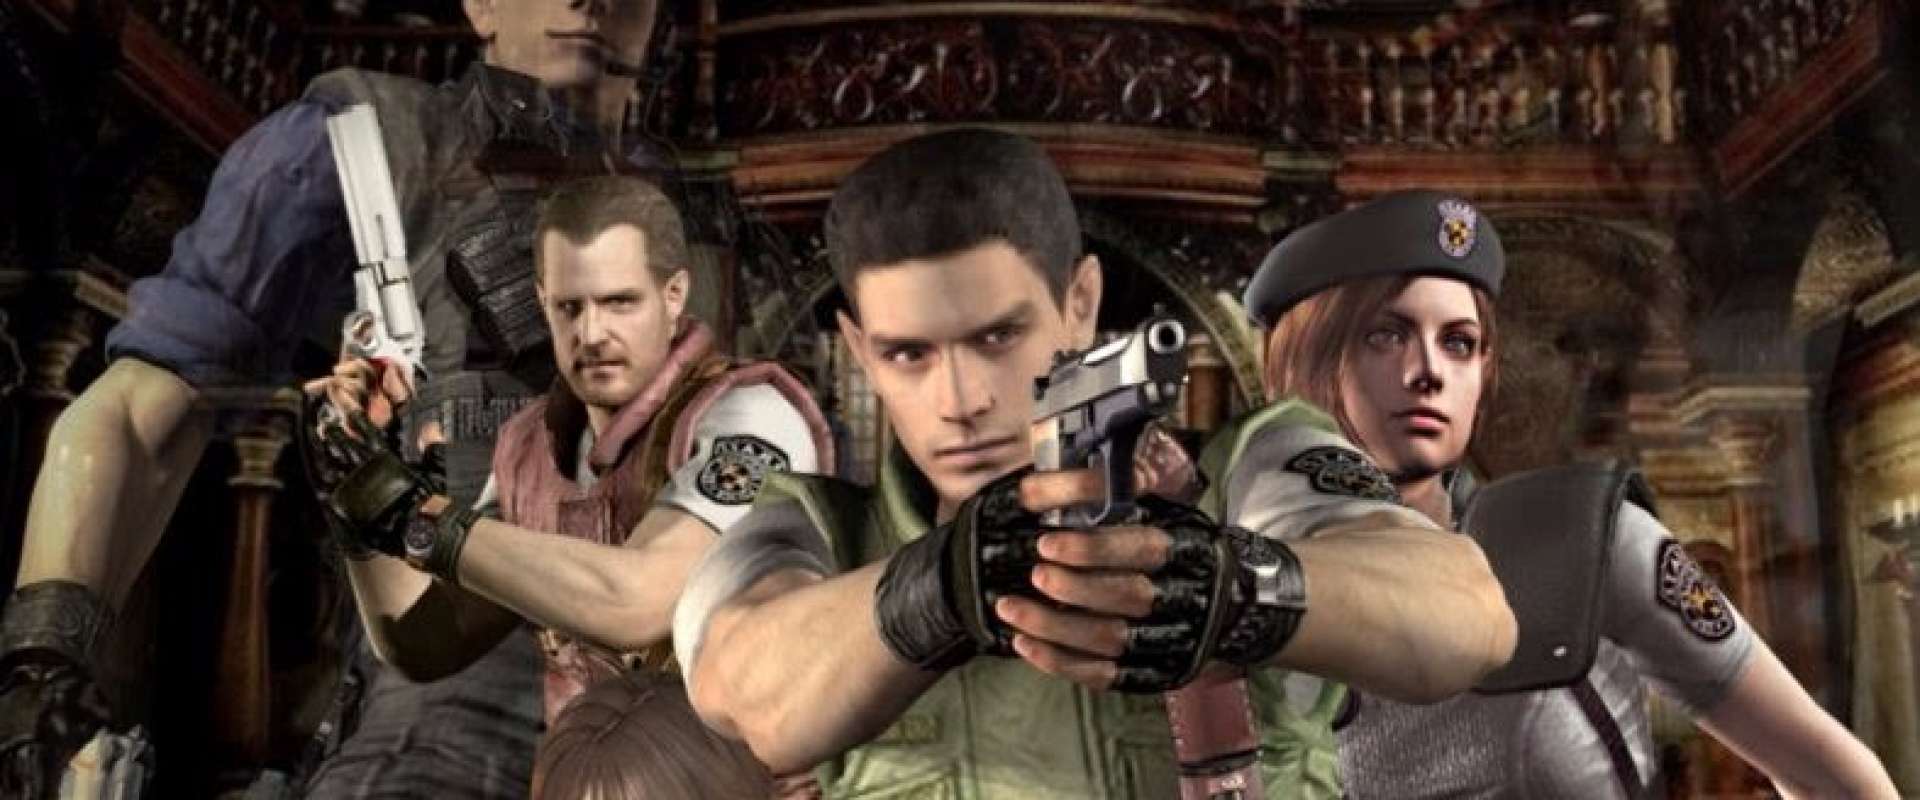 Resident Evil HD Remaster - Tribo Gamer